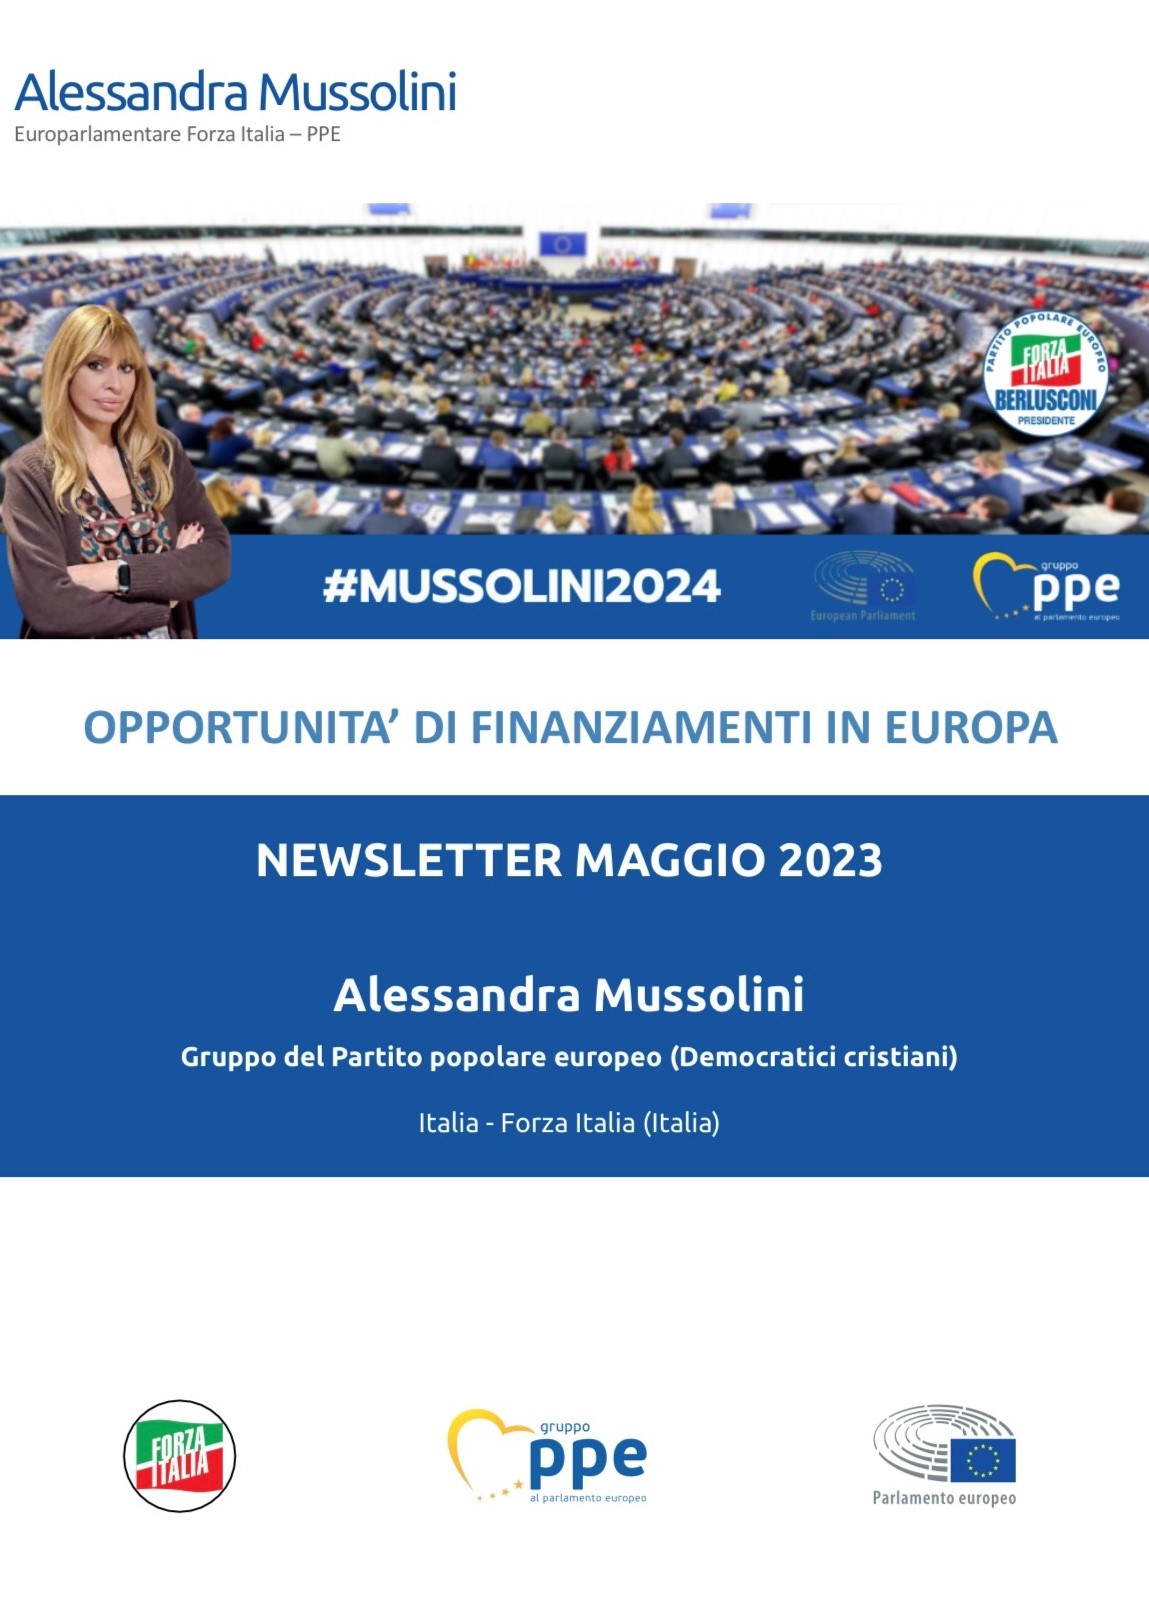 Newsletter di Maggio 2023 sulle opportunità di finanziamenti in Europa